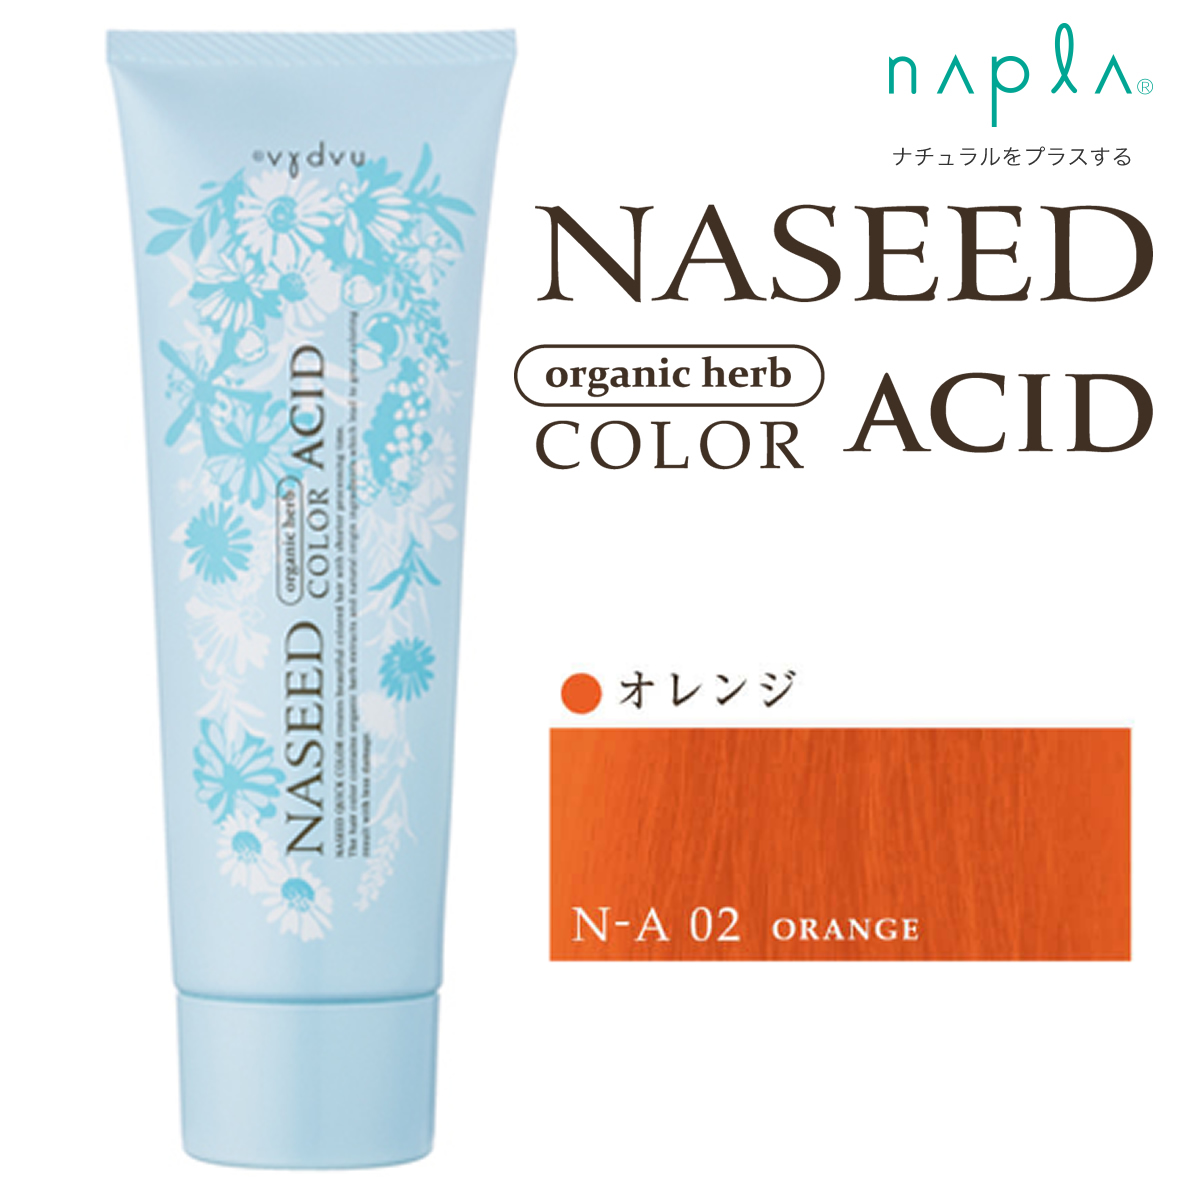 【取寄せ】ナプラ ナシード アシッドカラー N-A02 オレンジ 190g